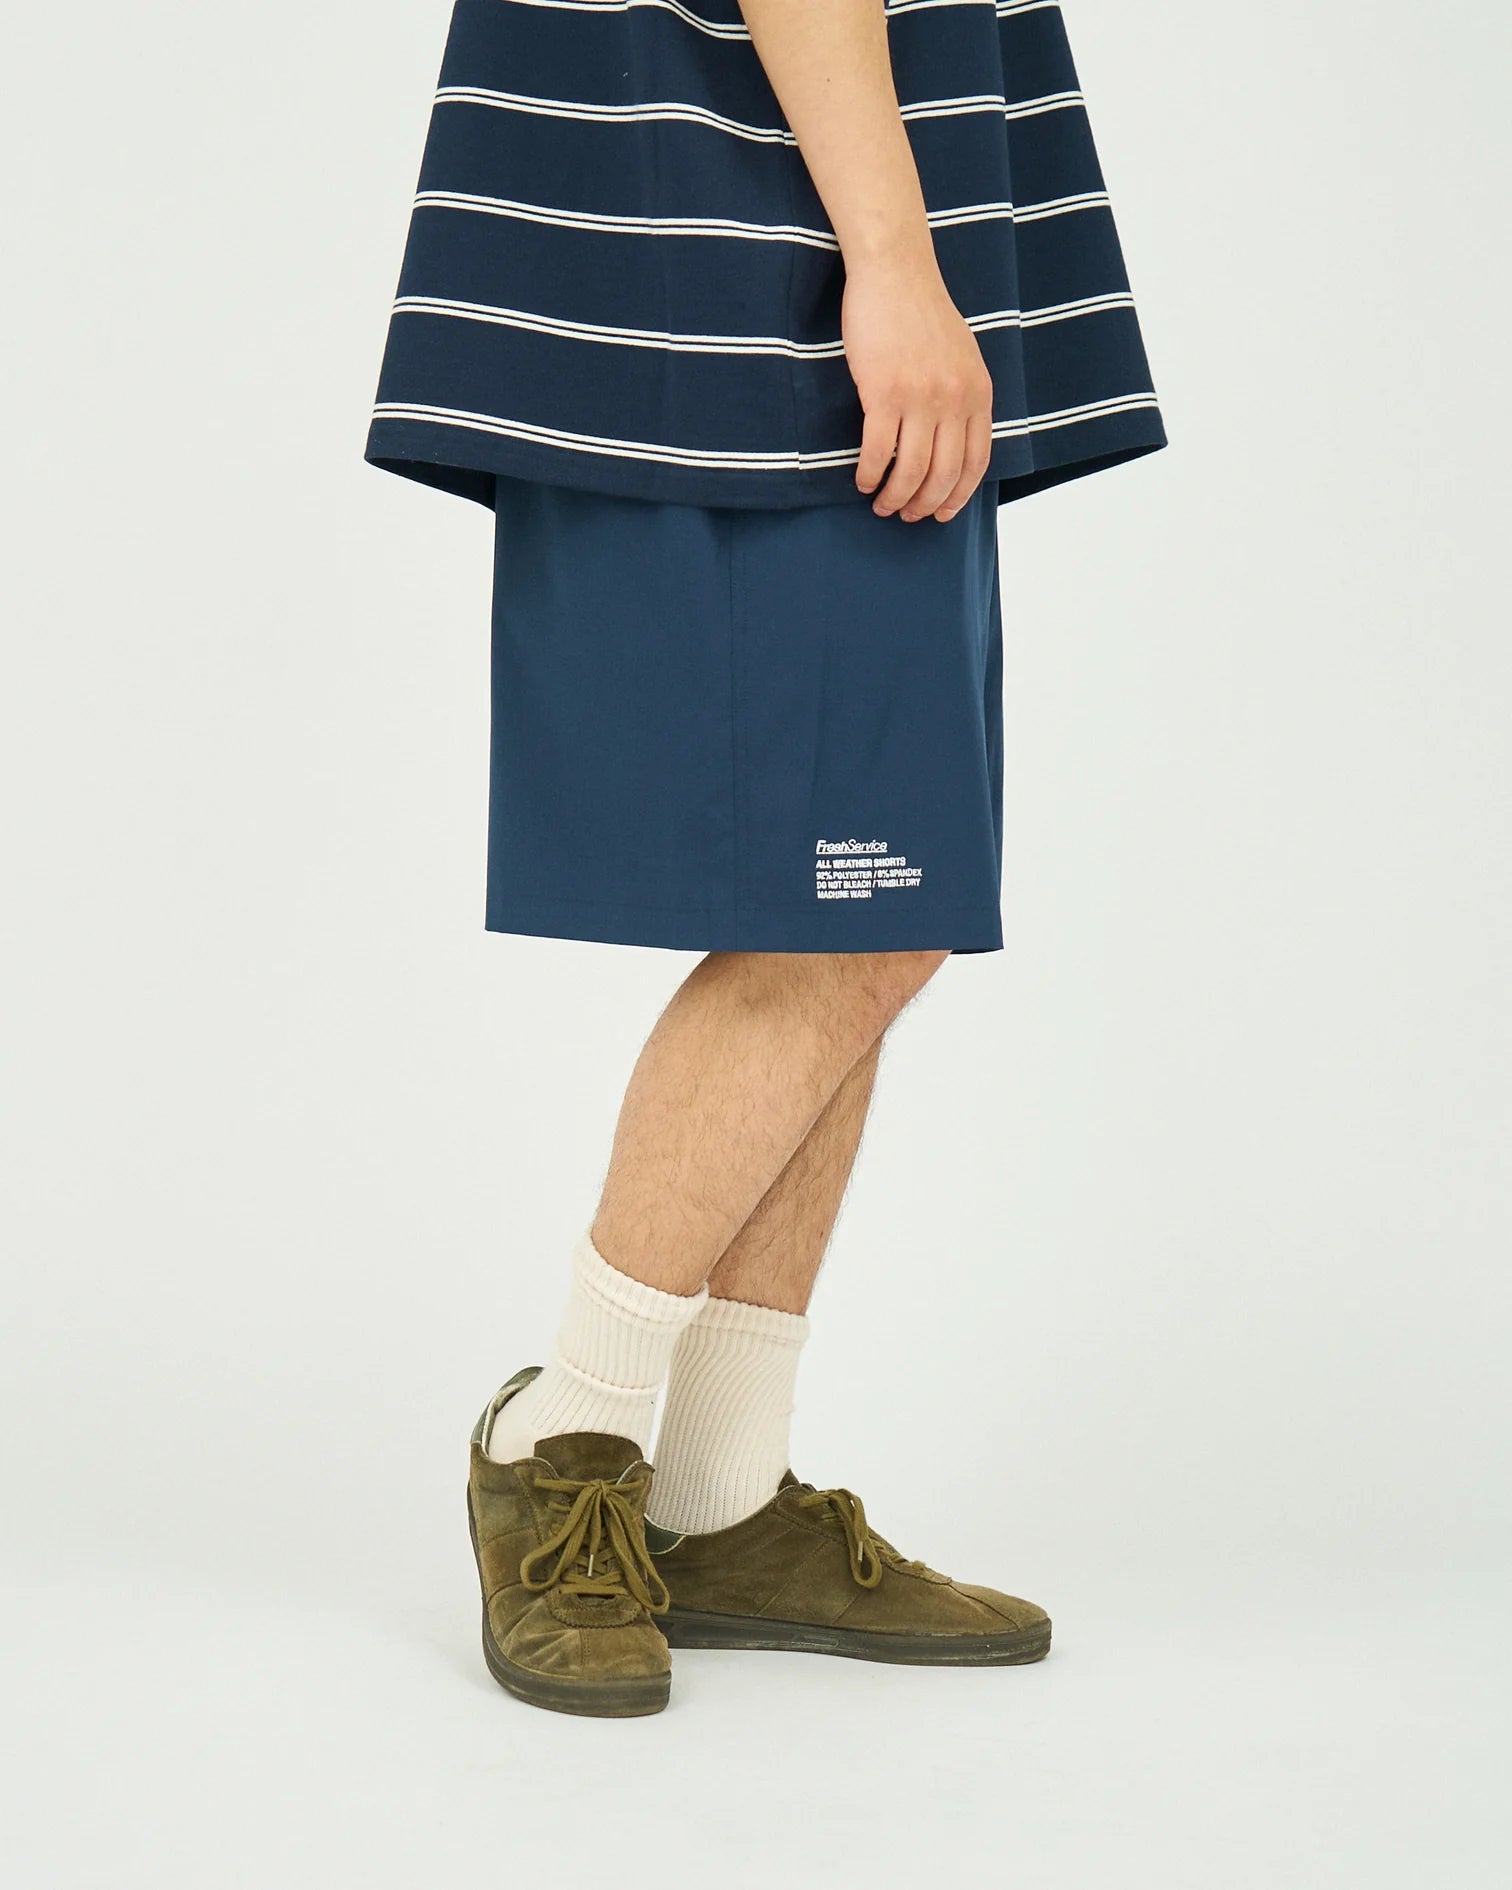 【日本製通販】freshservice all weather shorts 新品 ネイビー ショートパンツ